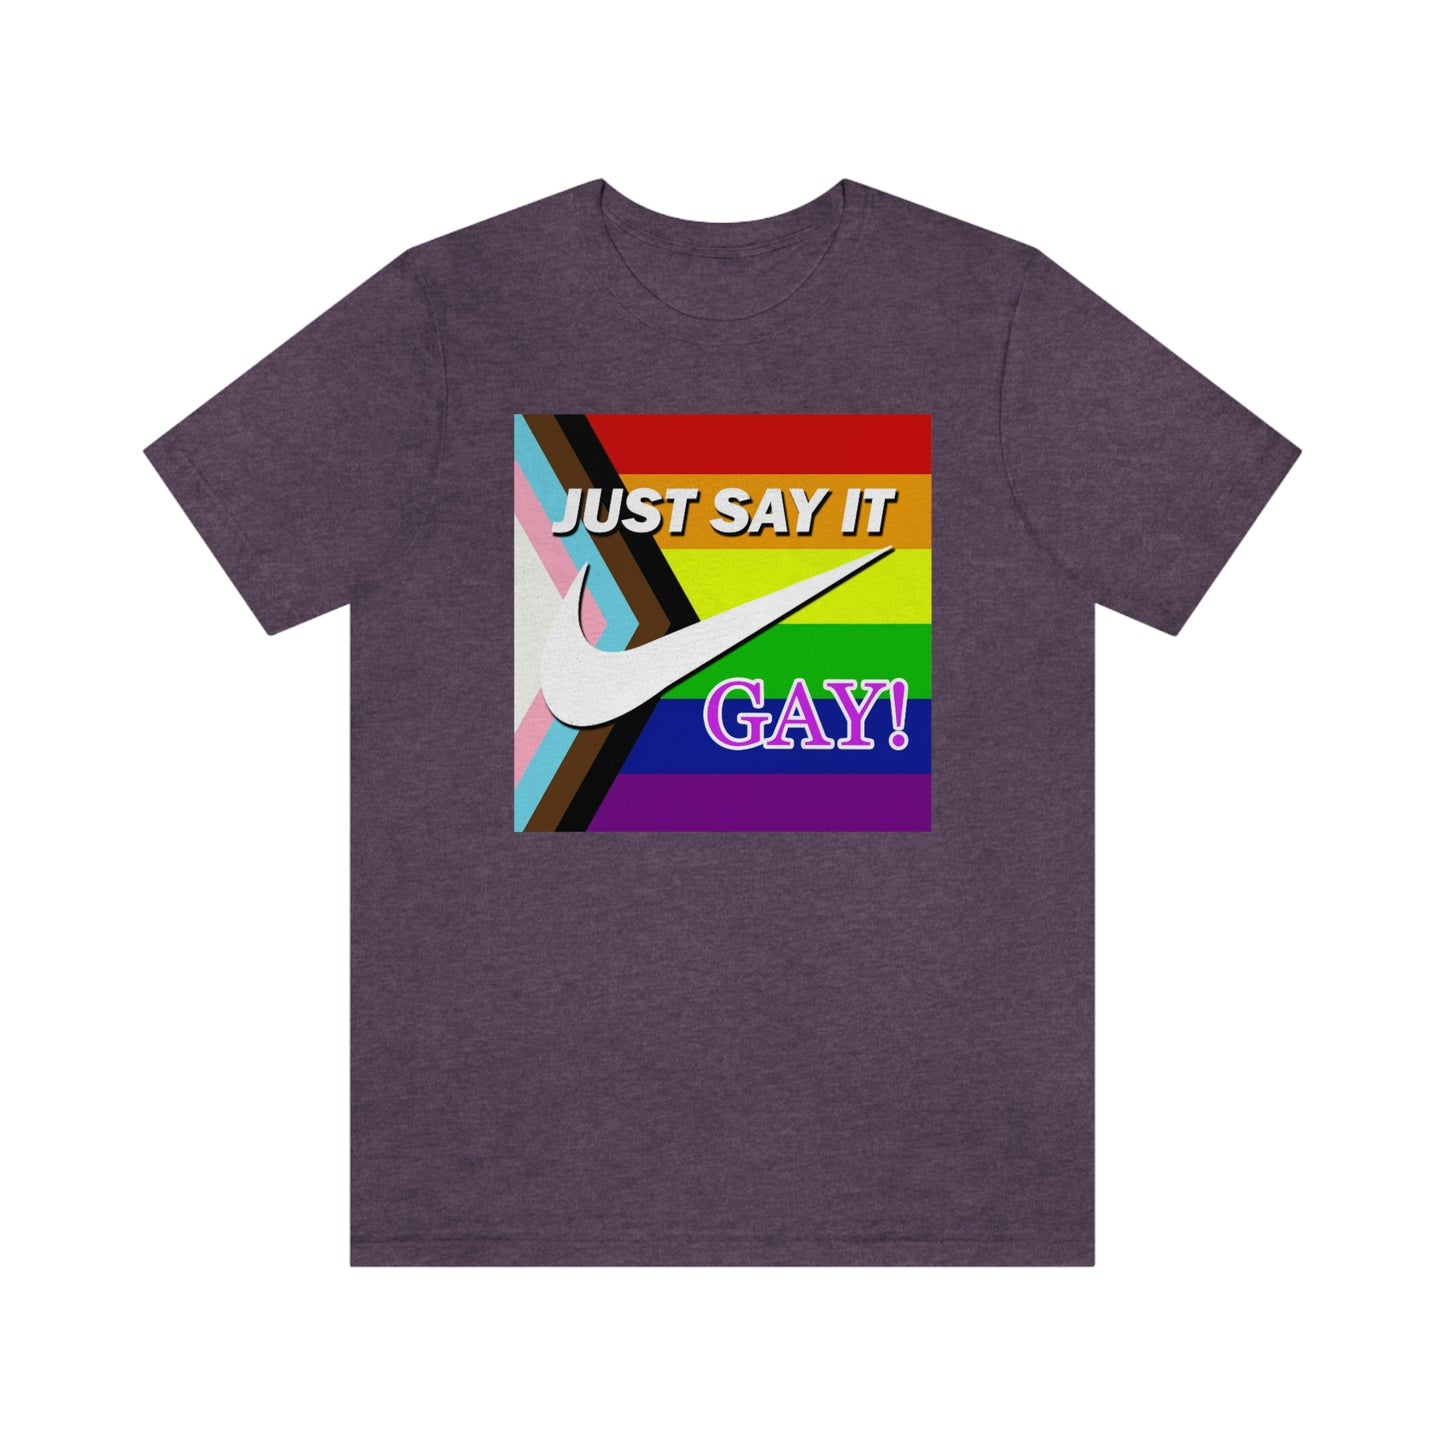 Dites-le simplement - T-shirt unisexe adulte GAY